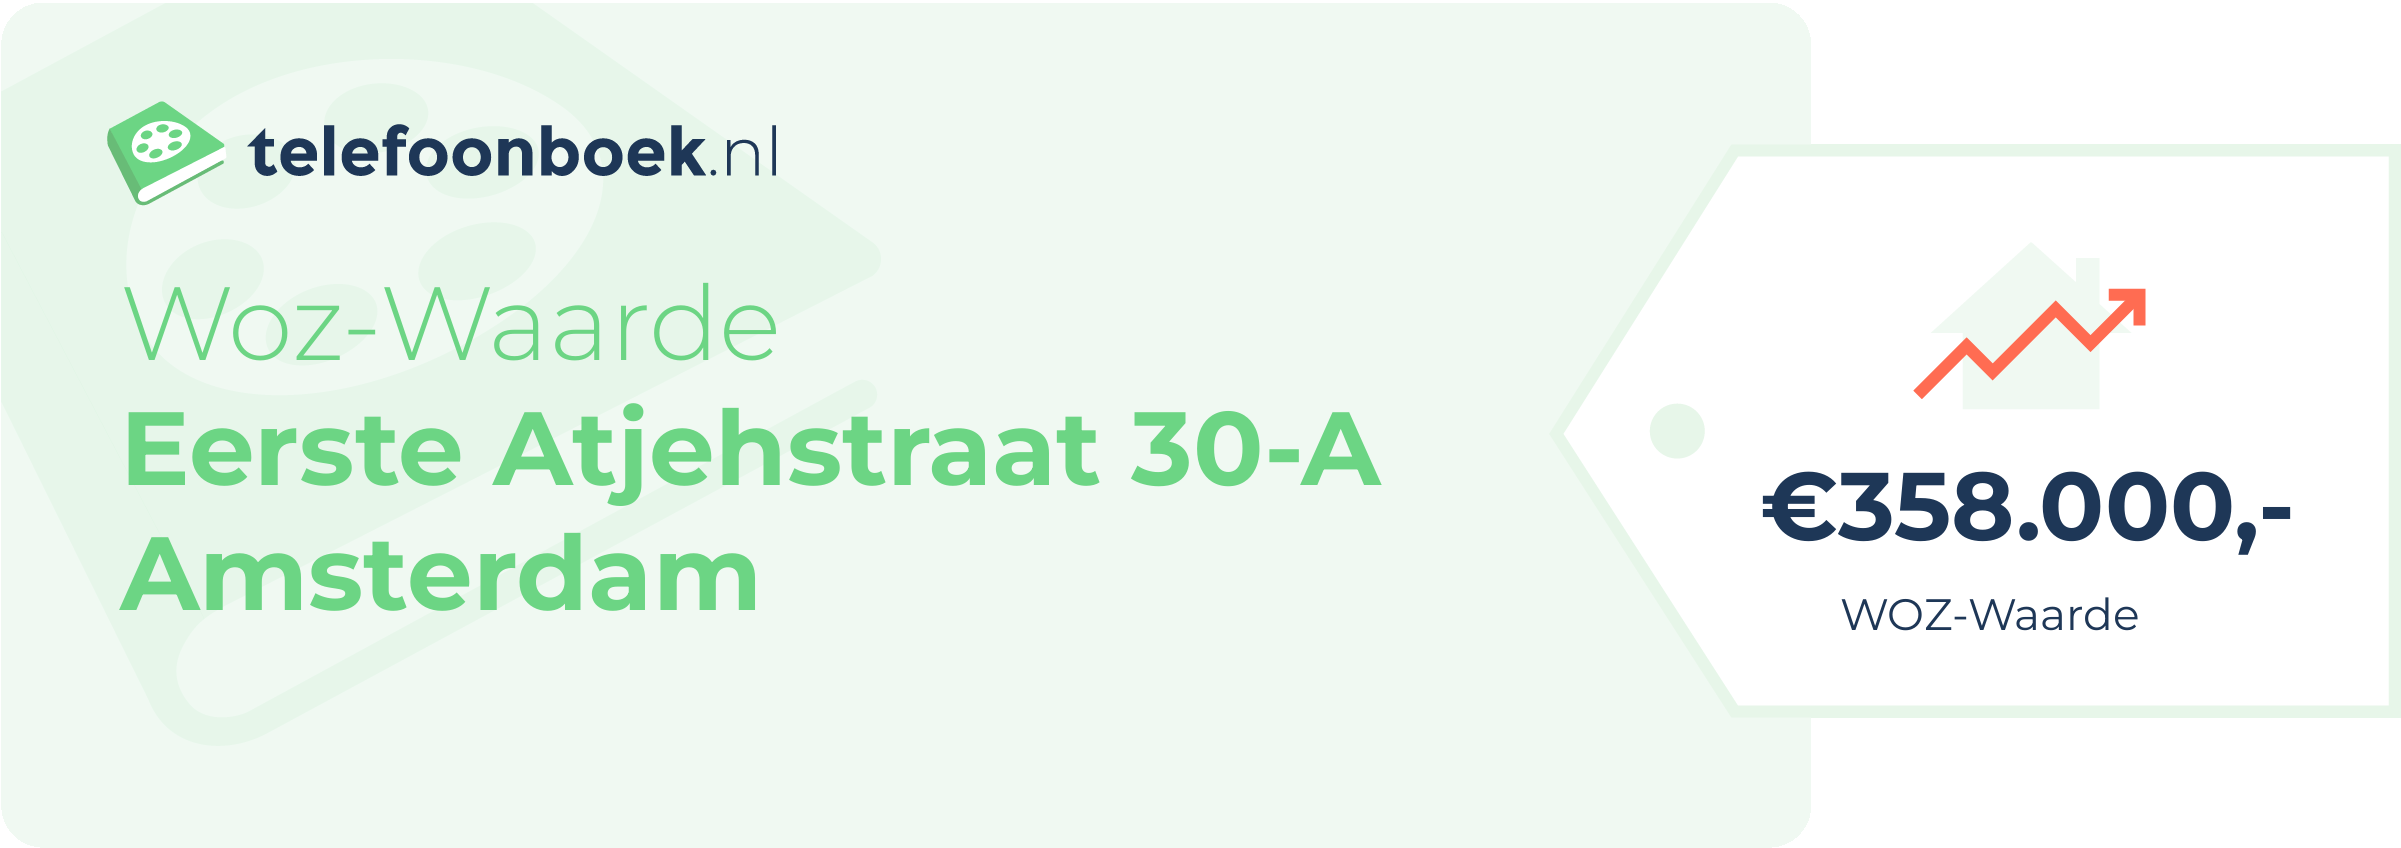 WOZ-waarde Eerste Atjehstraat 30-A Amsterdam